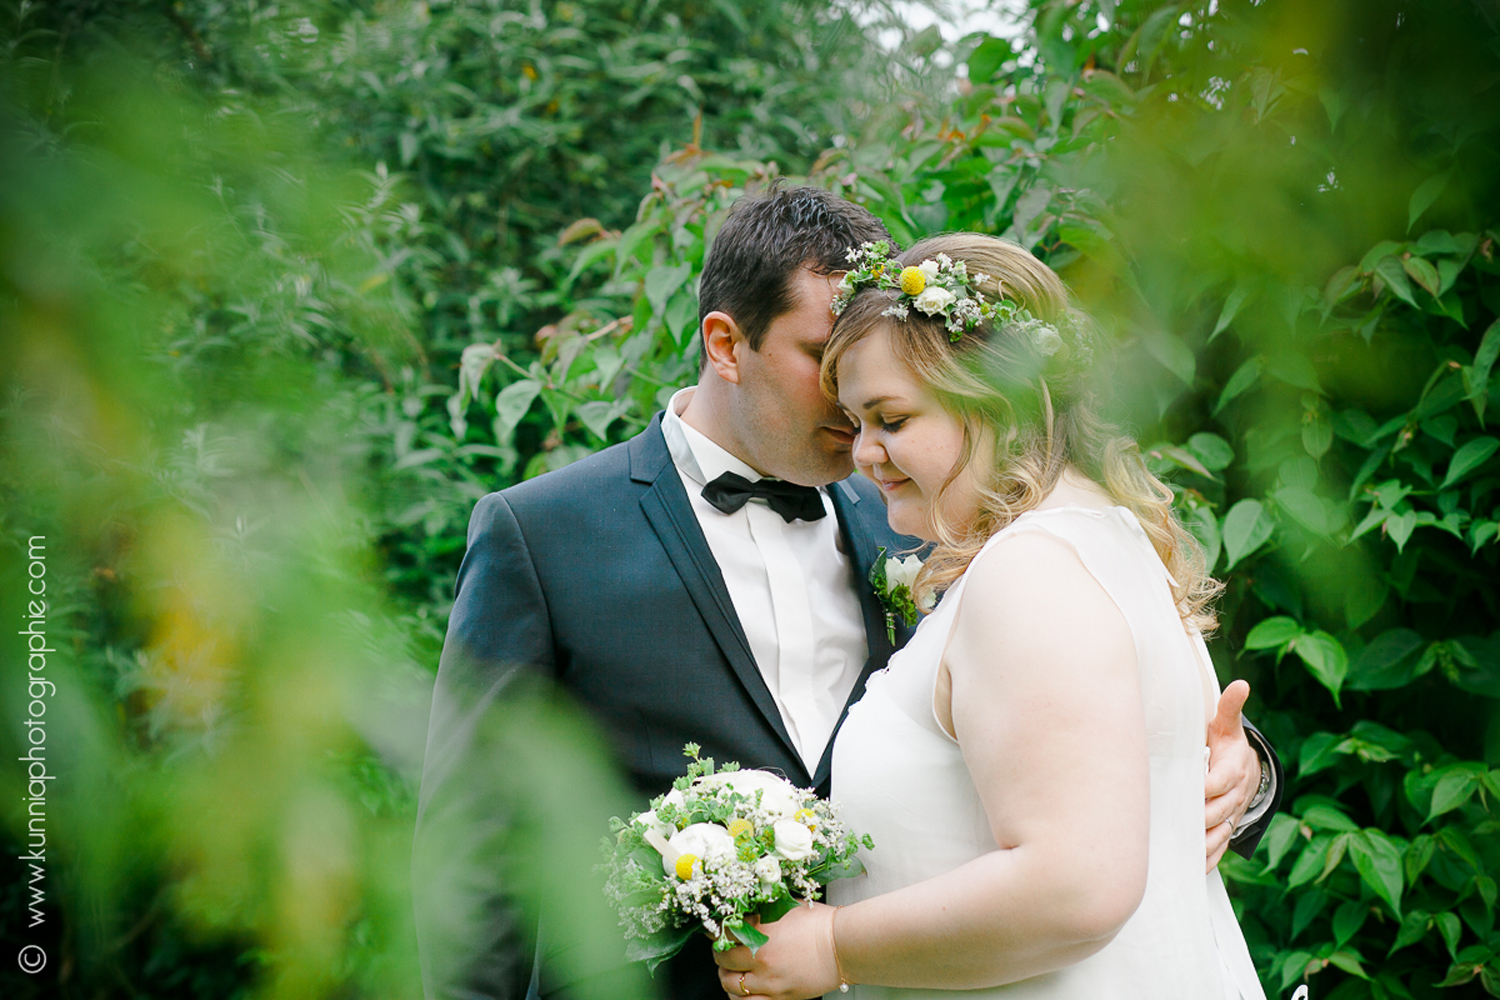 Mariage champetre à la grange d'espins par Kunnia Photographie photographe mariage normandie